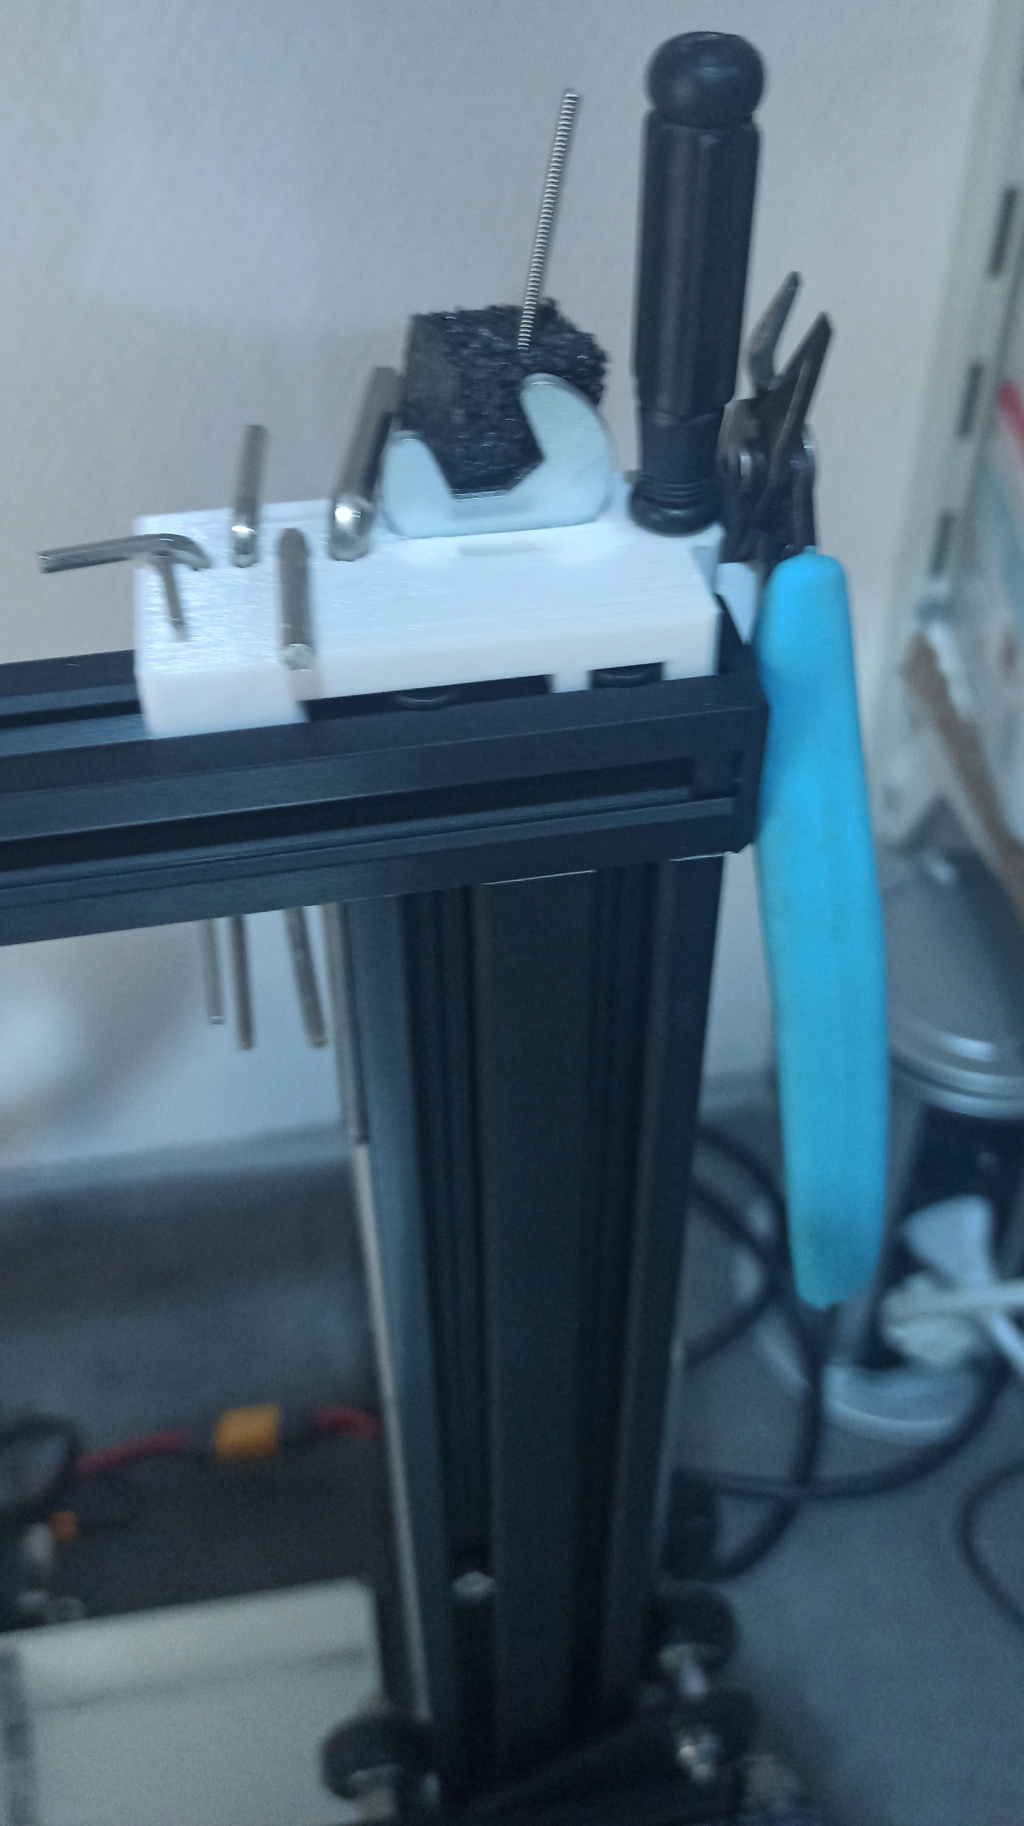 [VENDU] Imprimante 3D Ender 3 upgradée : CM V4, BL-Touch, Kit extrudeur, kit nivellement, etc. Img_2259